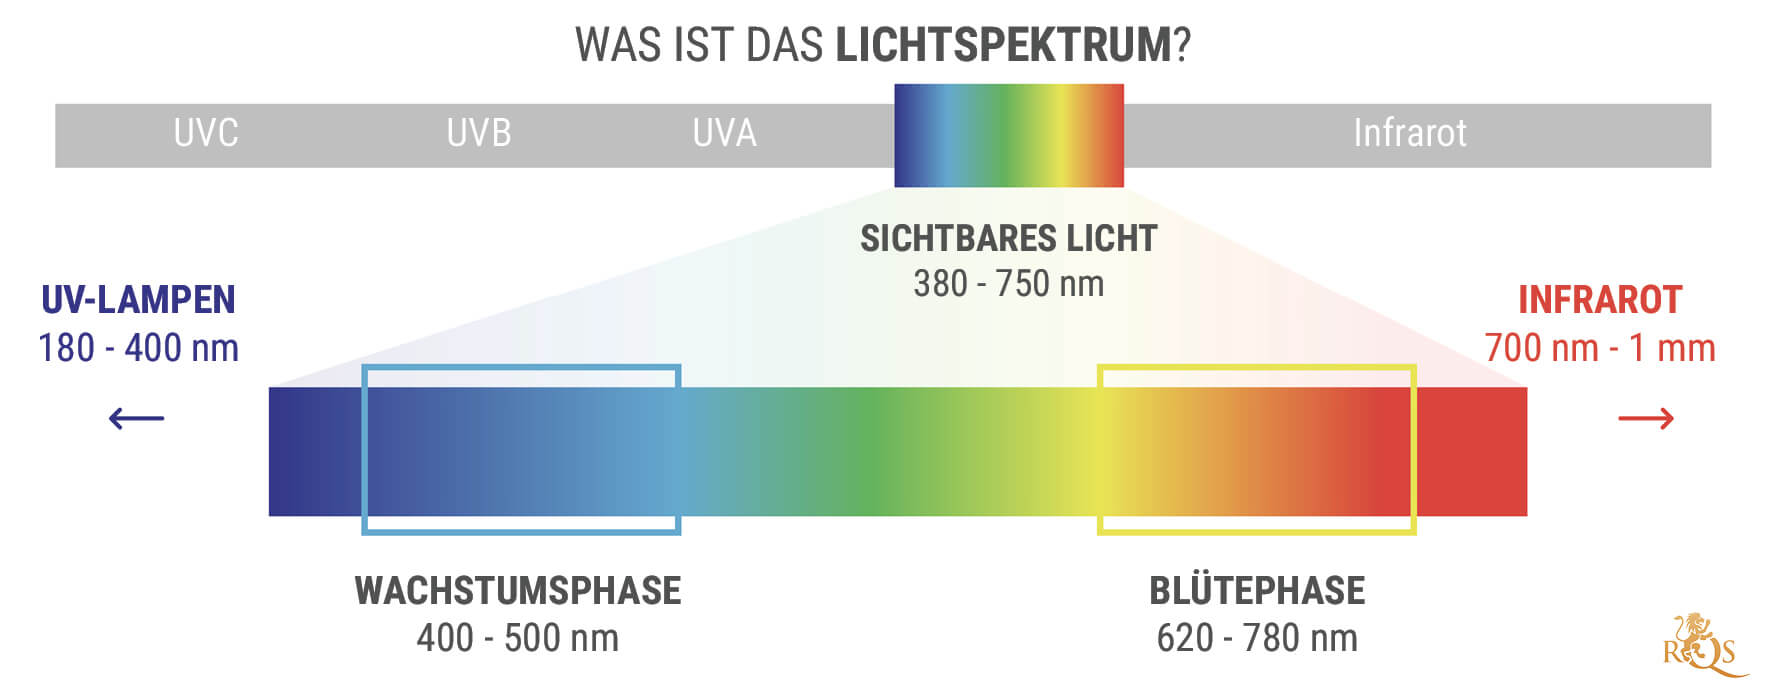 Was Ist Das Lichtspektrum?